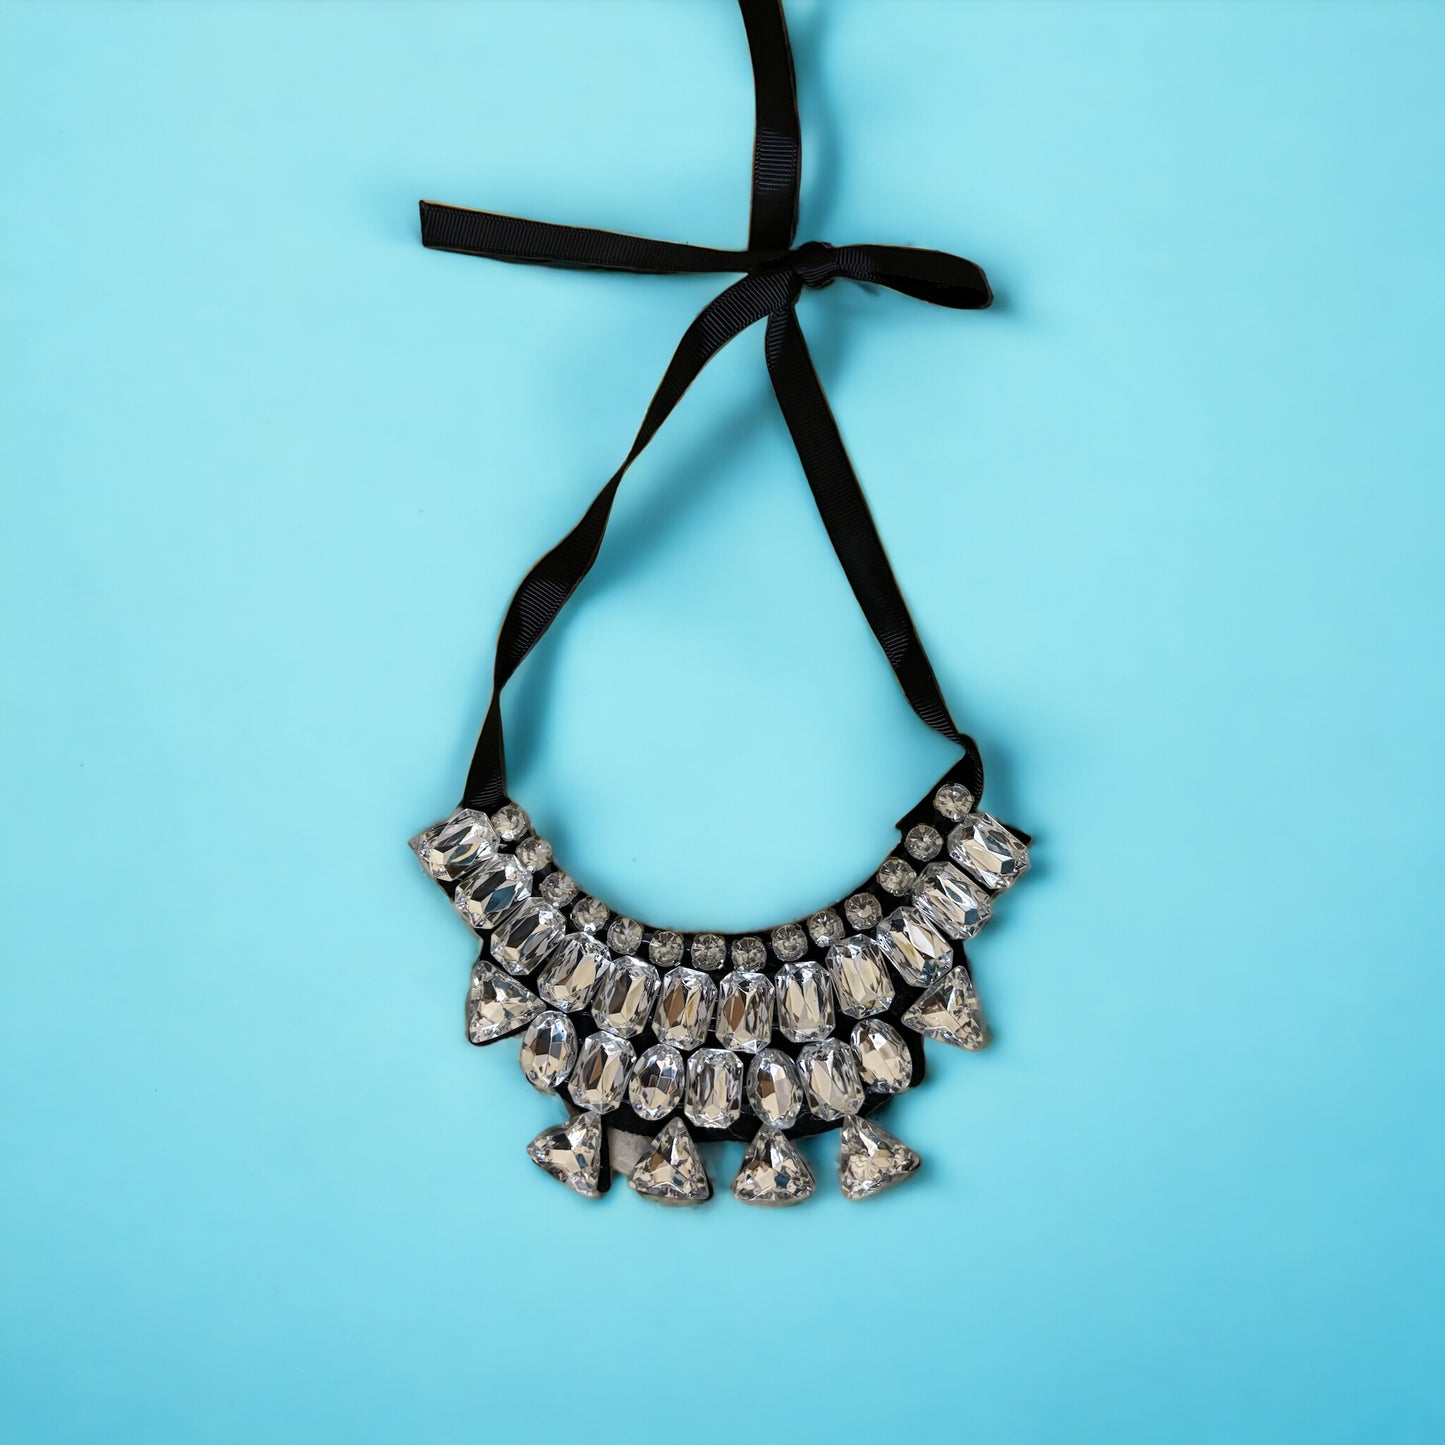 Tie collar necklace- 4